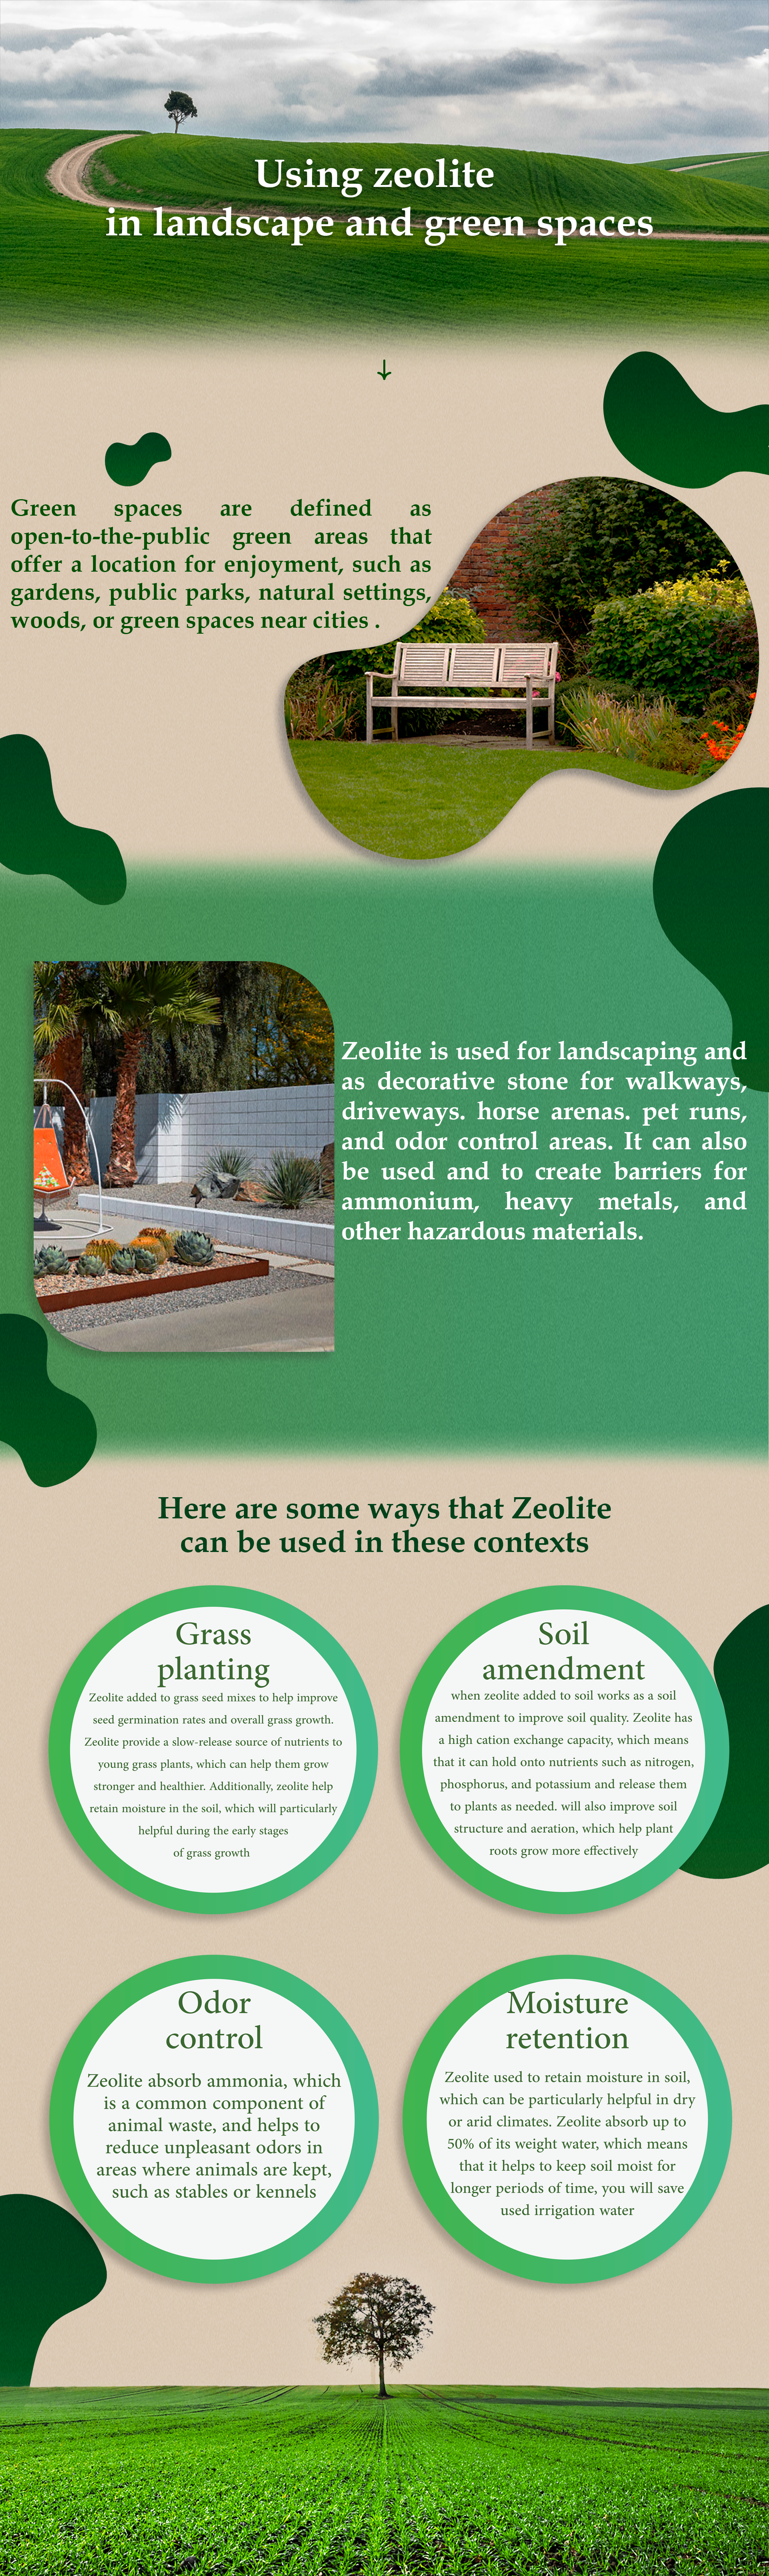 Using zeolite in landscape EN